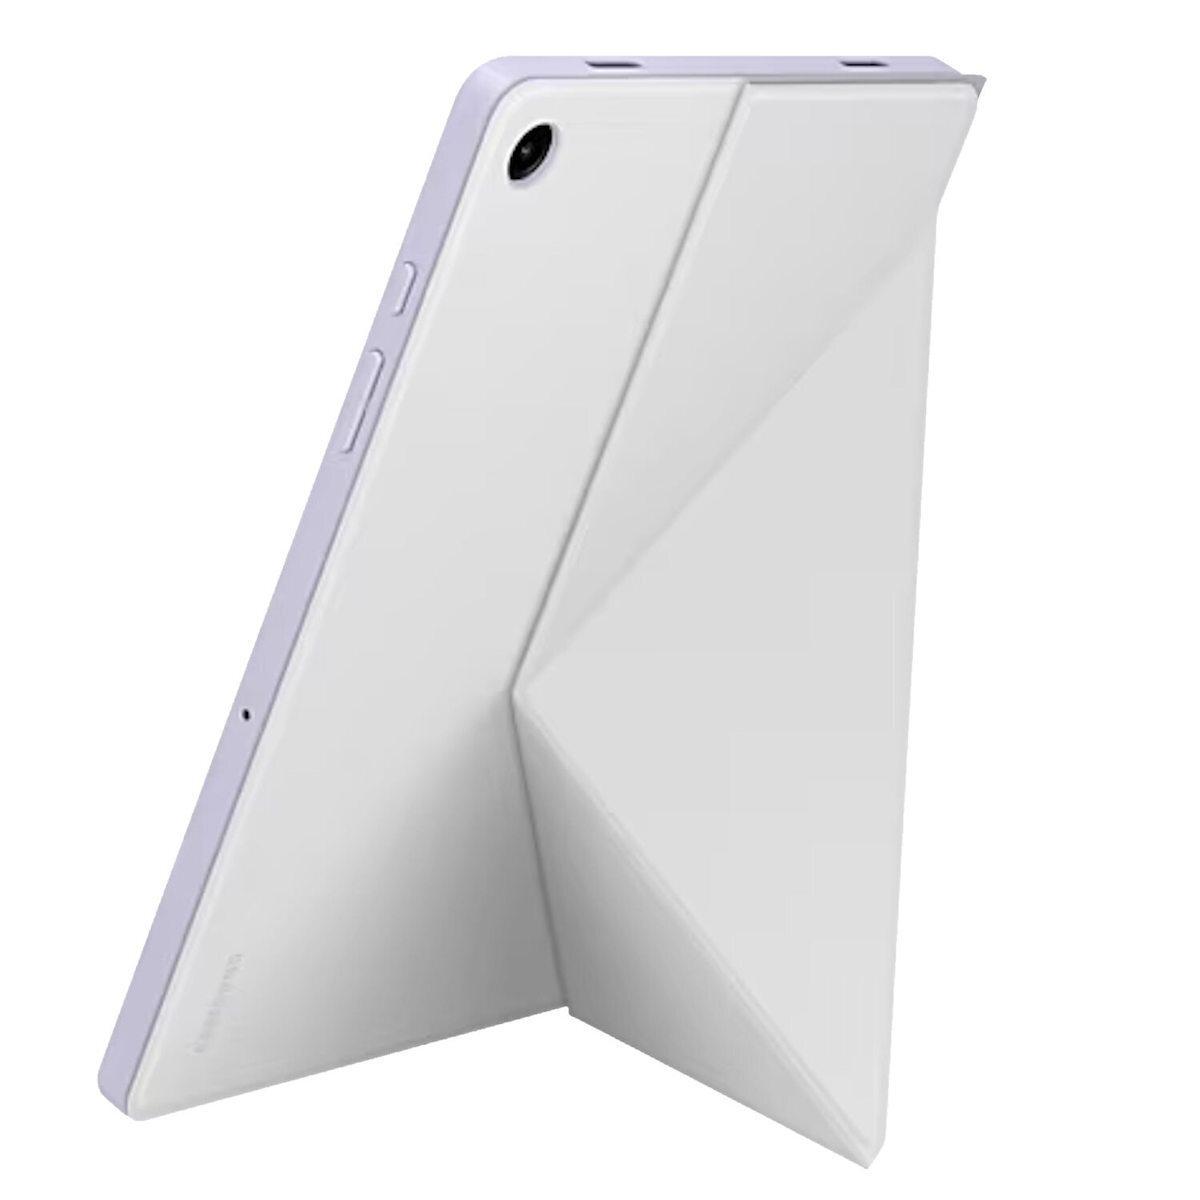 Samsung Book Cover Galaxy Tab A9 white (EF-BX110TWEGWW)